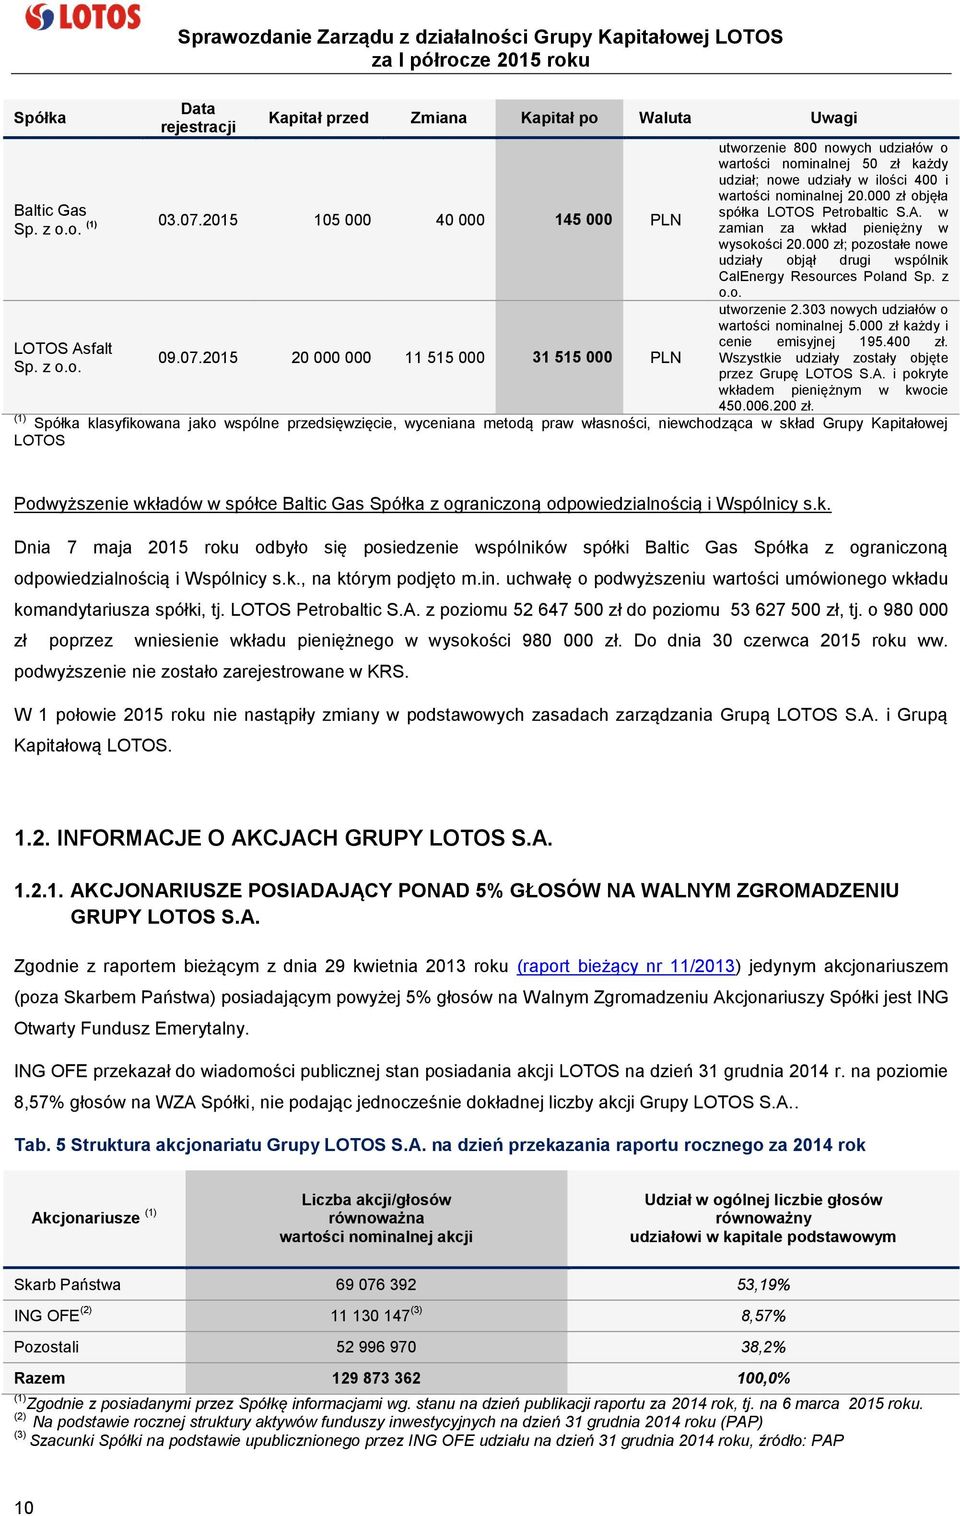 2015 20 000 000 11 515 000 31 515 000 PLN utworzenie 800 nowych udziałów o wartości nominalnej 50 zł każdy udział; nowe udziały w ilości 400 i wartości nominalnej 20.